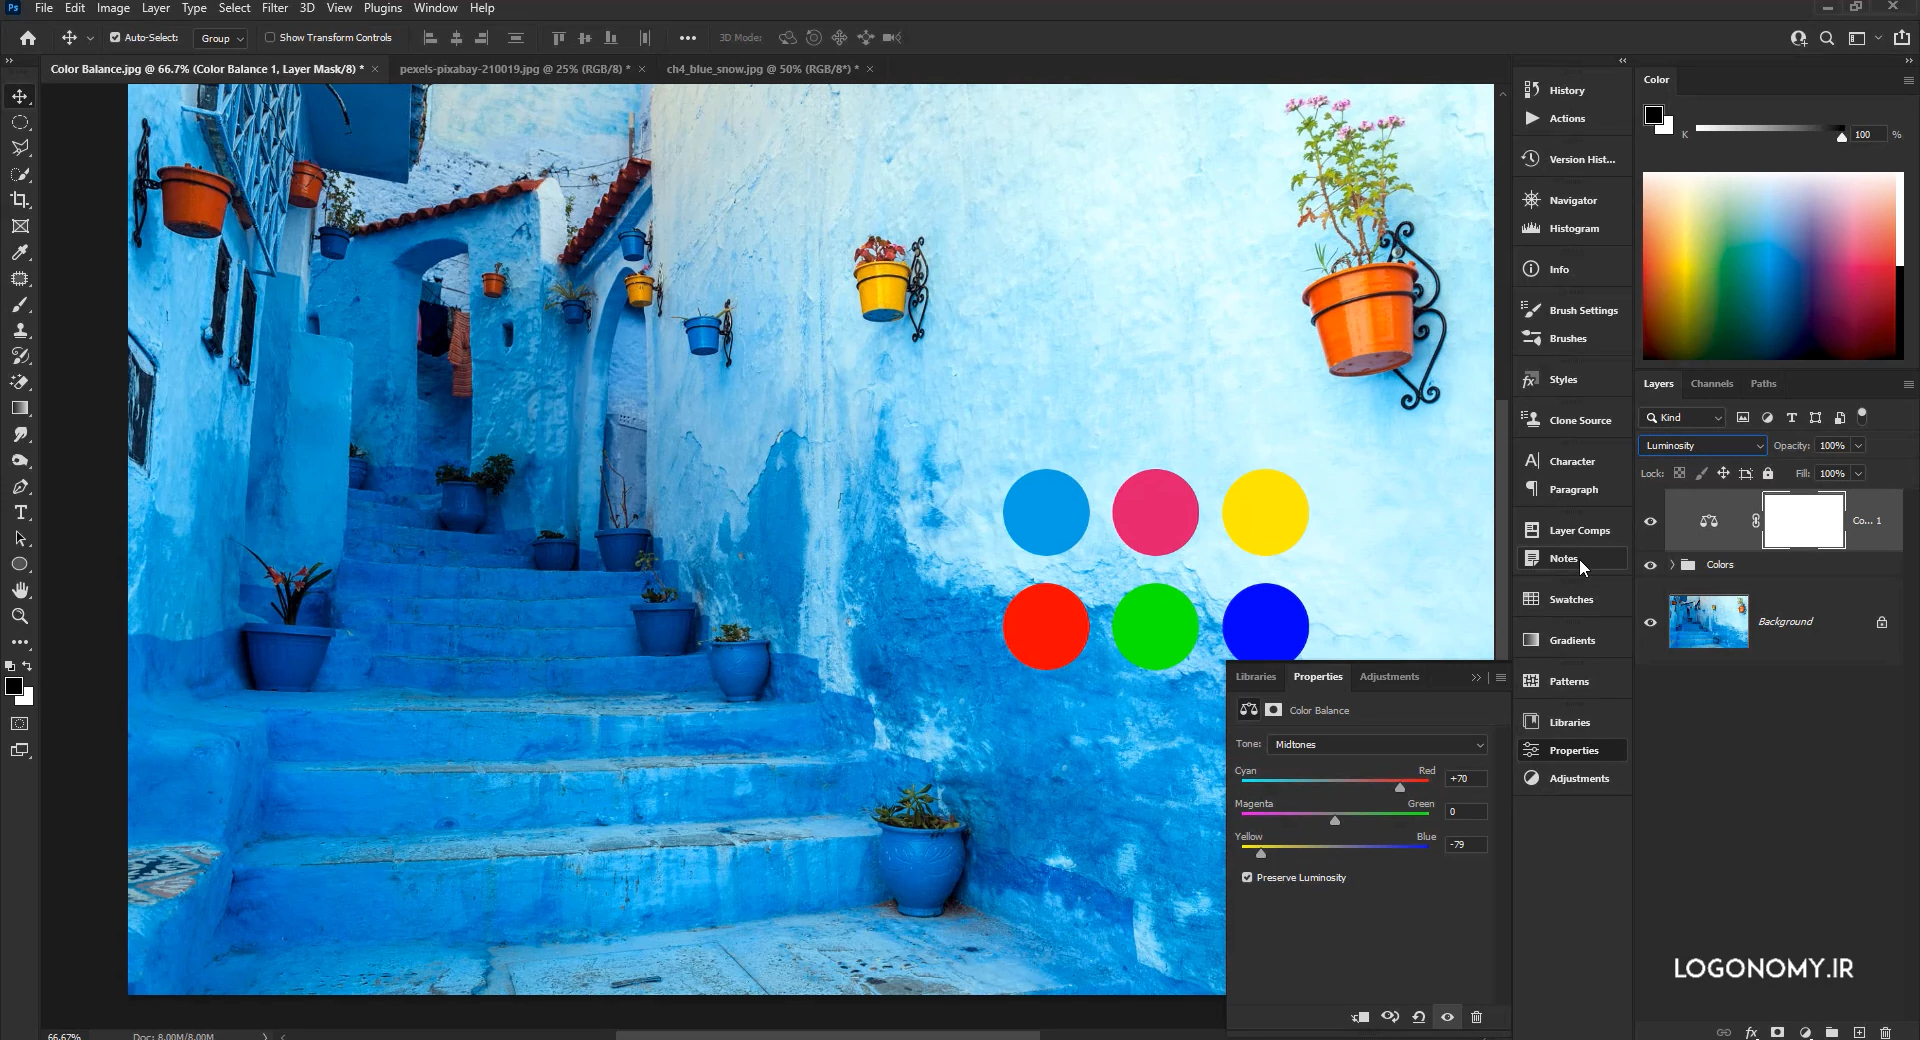 اصلاح رنگ عکس با فرمان کالر بالانس (Color Balance) در برنامه فتوشاپ